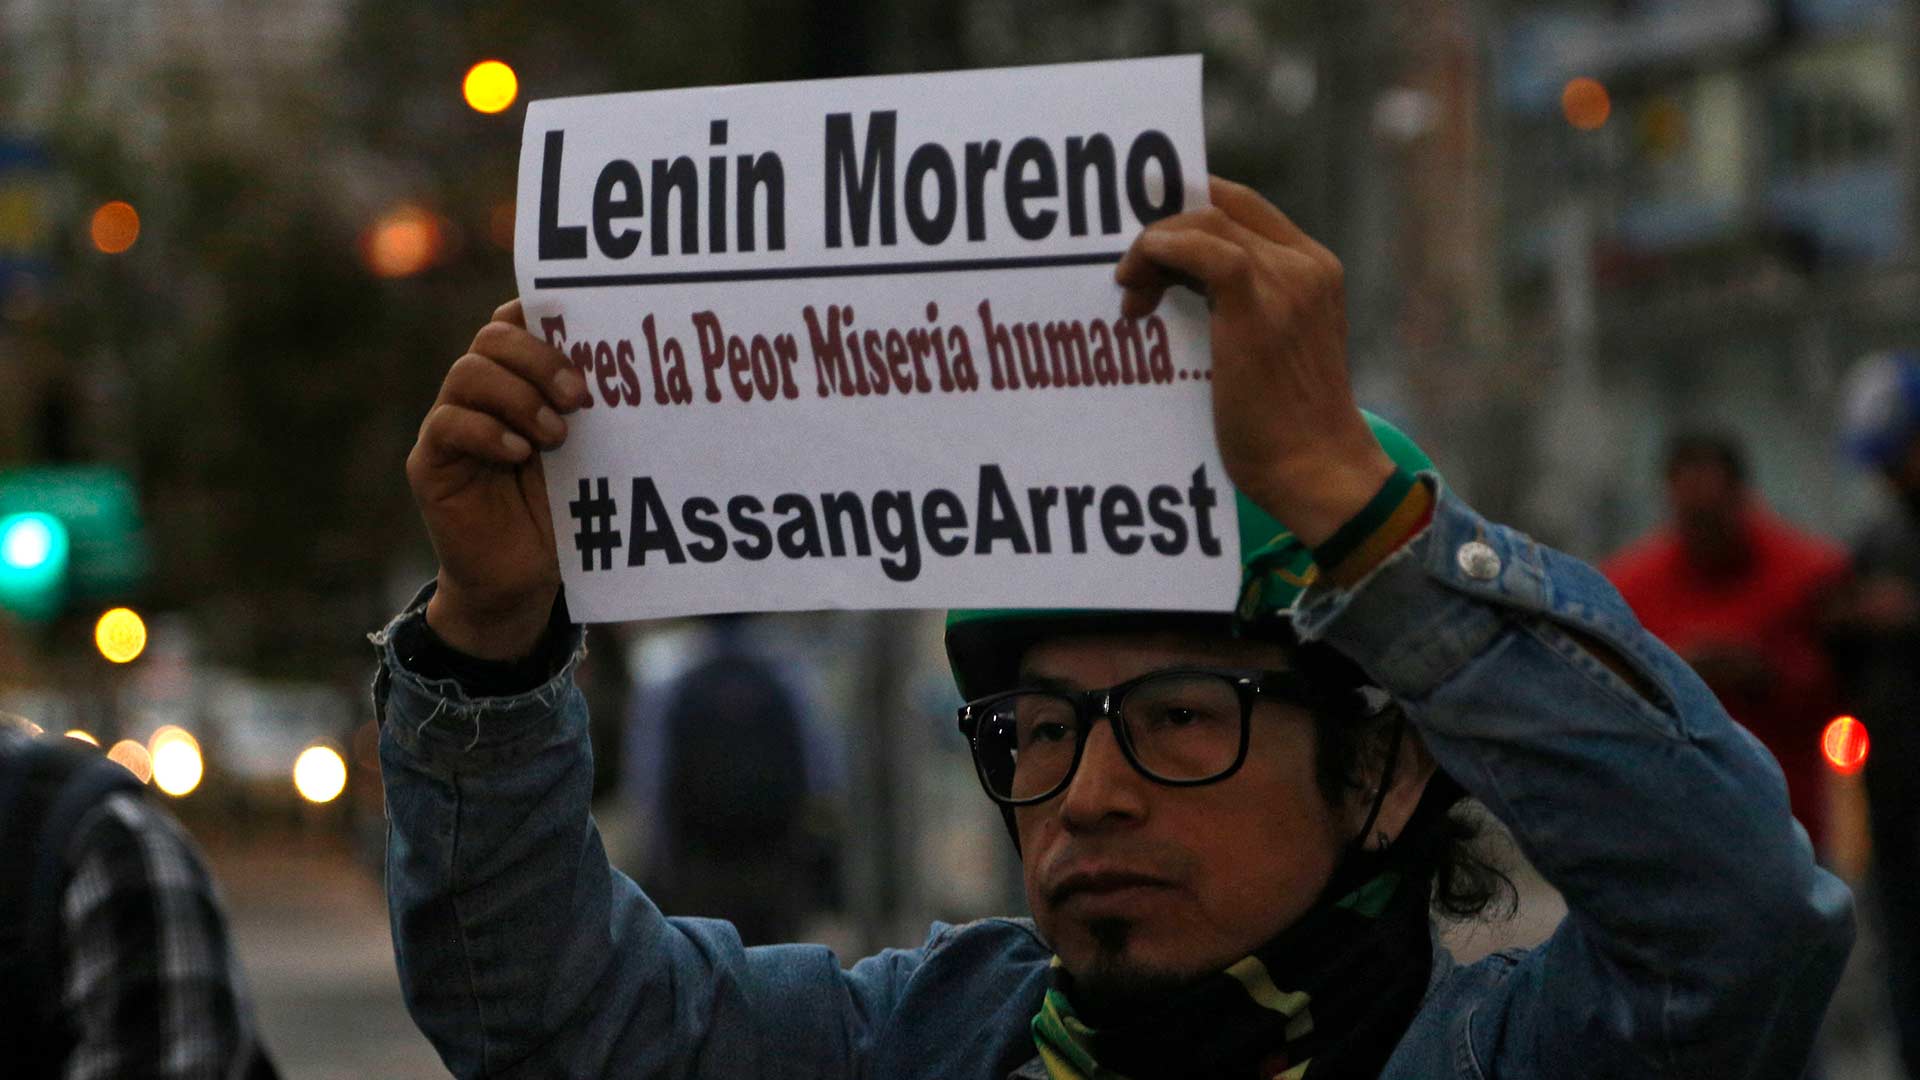 Moreno denuncia que Assange intentó crear “un centro de espionaje” en la embajada de Ecuador